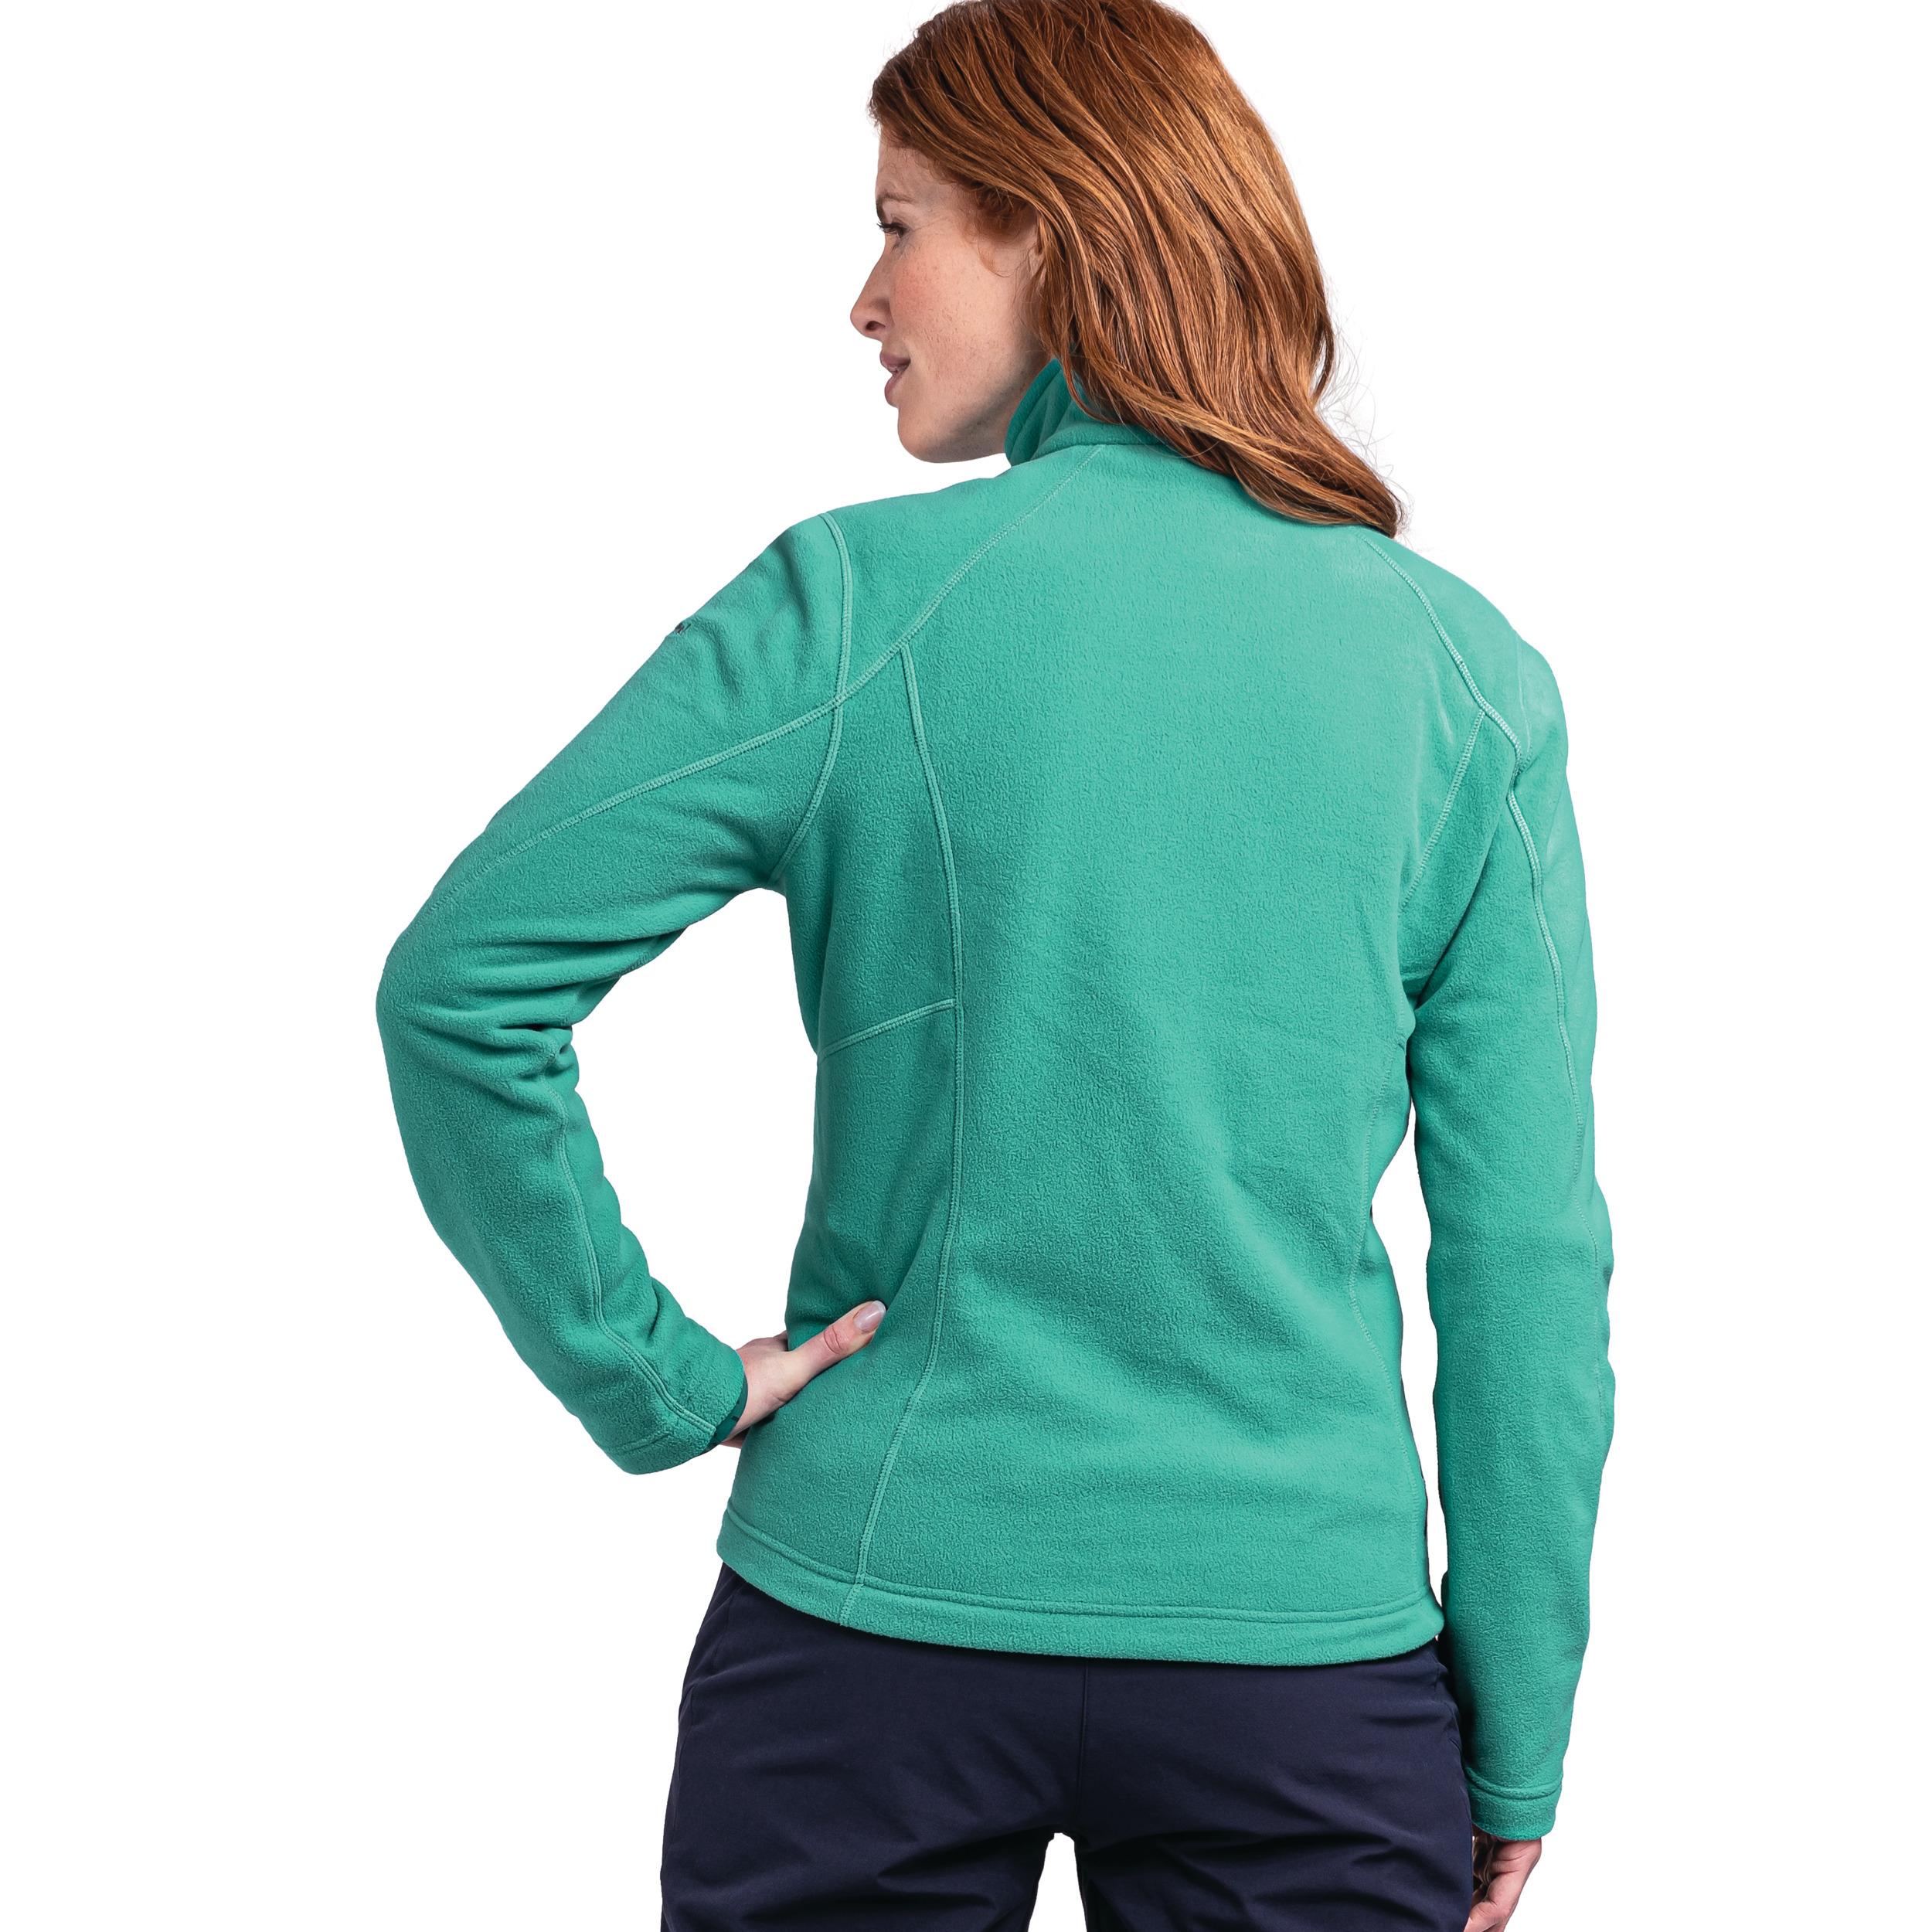 Shop von Jacket Schöffel Damen Fleecejacke Online Fleece grün SportScheck - im 7290 Leona3 kaufen